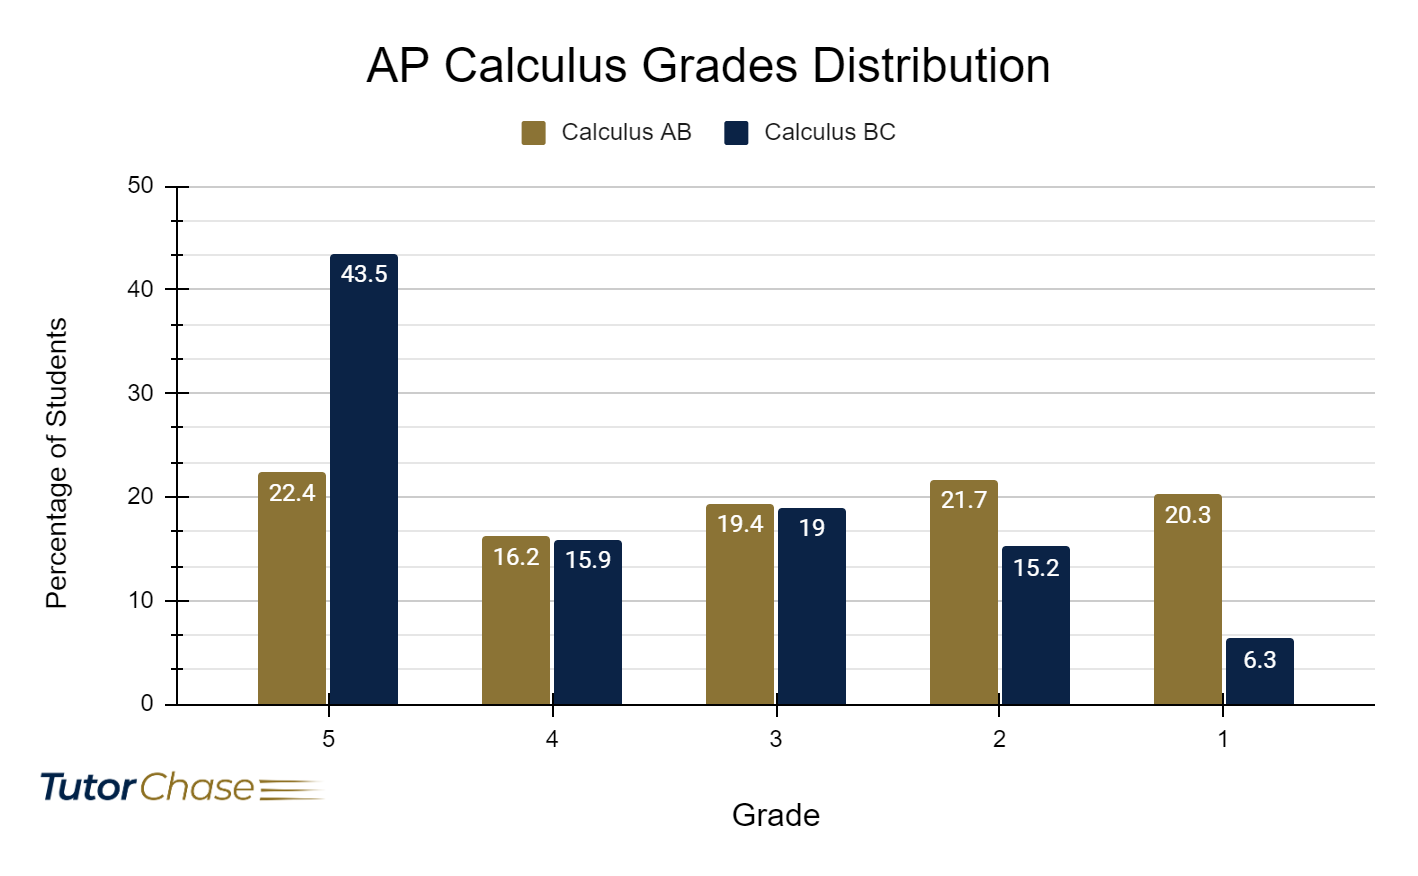 AP Calculus-AB and AP-Calculus BC grades in 2023